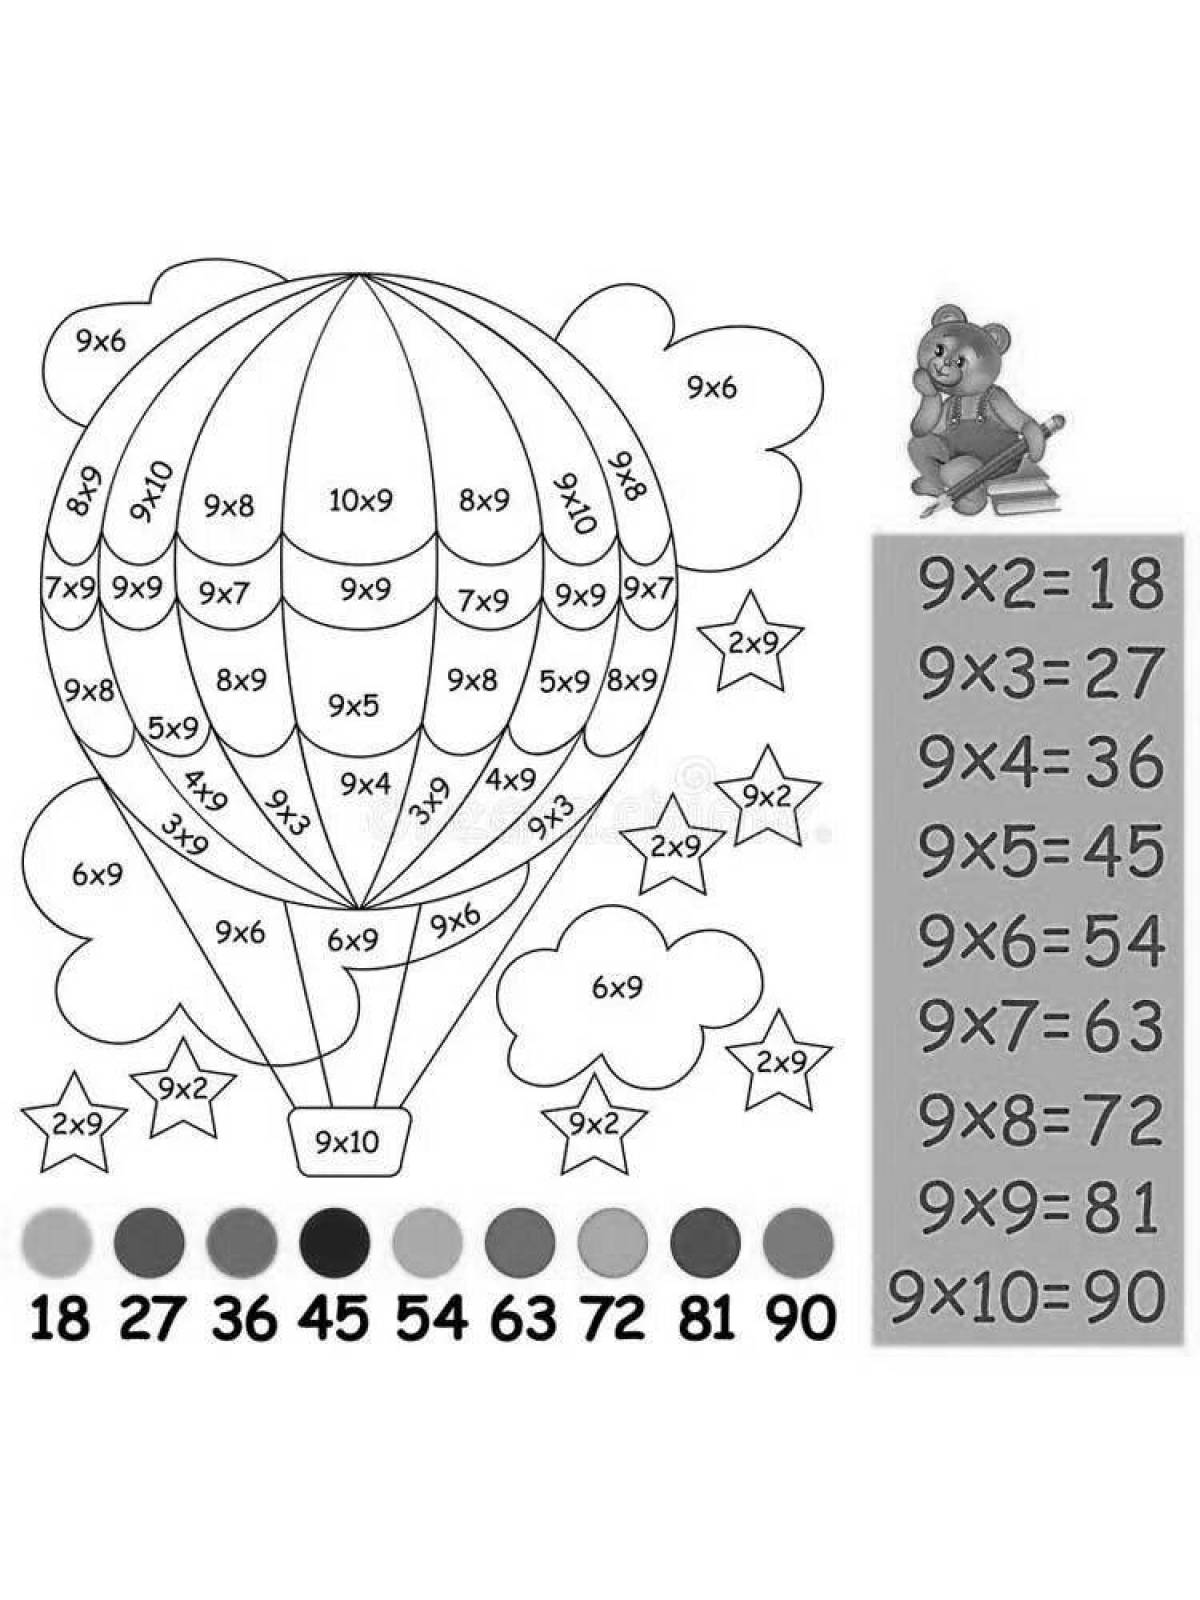 Красочно иллюстрированная таблица умножения 2 на 3